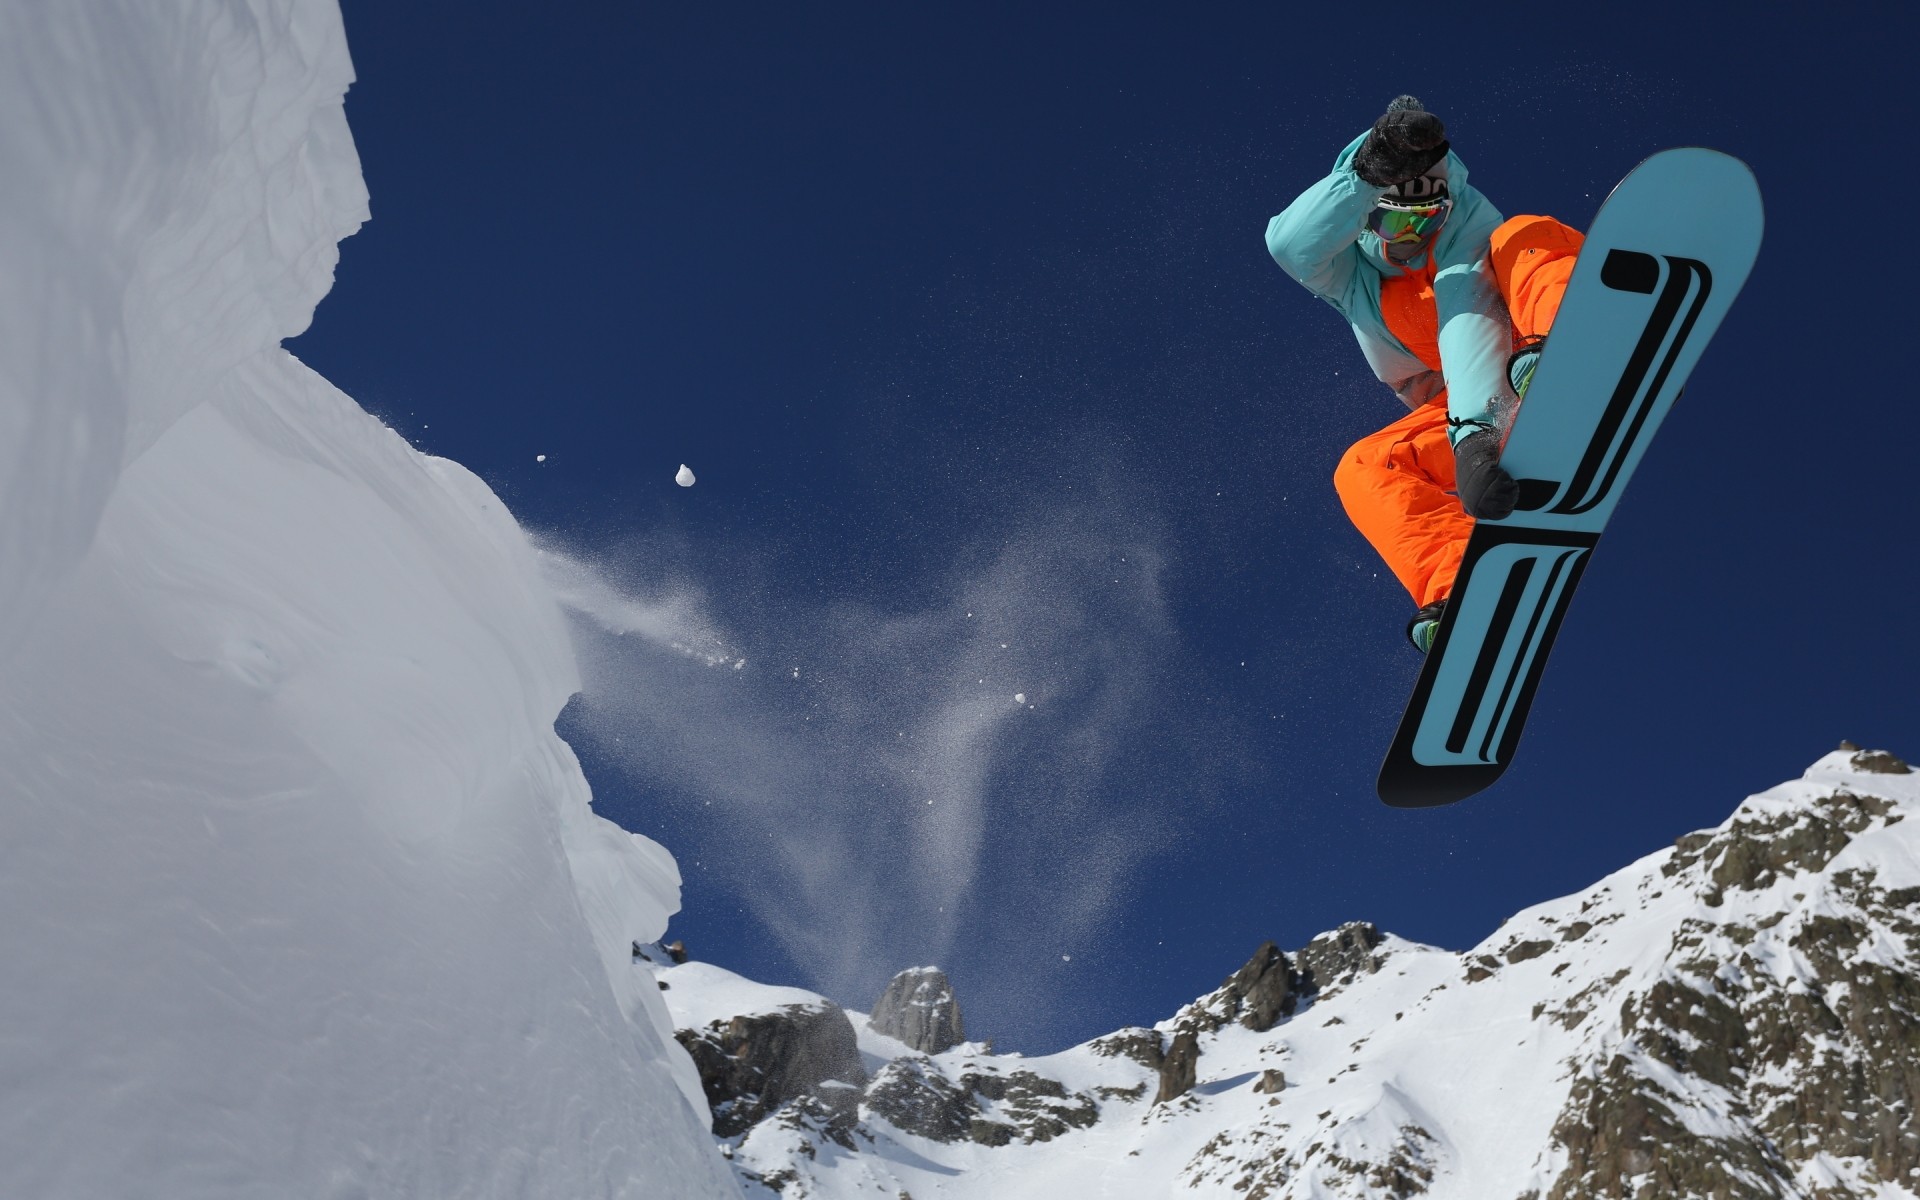 сноуборд снег зима горы действие лед холодная лыжница лезут приключения отдых человек спорт на открытом воздухе альпинист зимний вид спорта